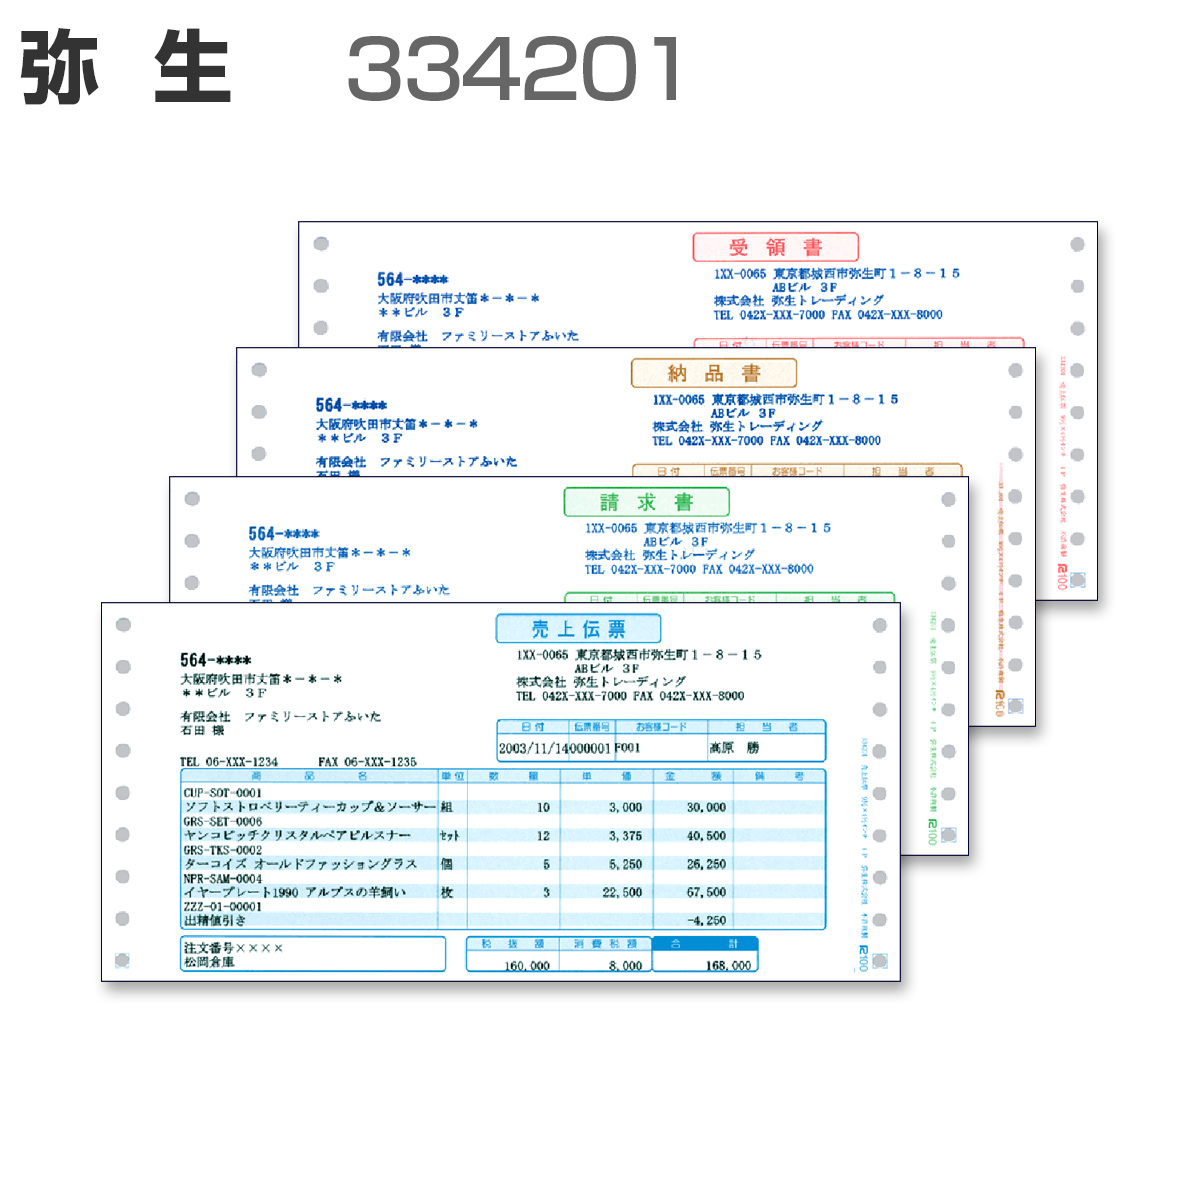 弥生 334201 売上伝票(連続用紙)(500セット) - 1